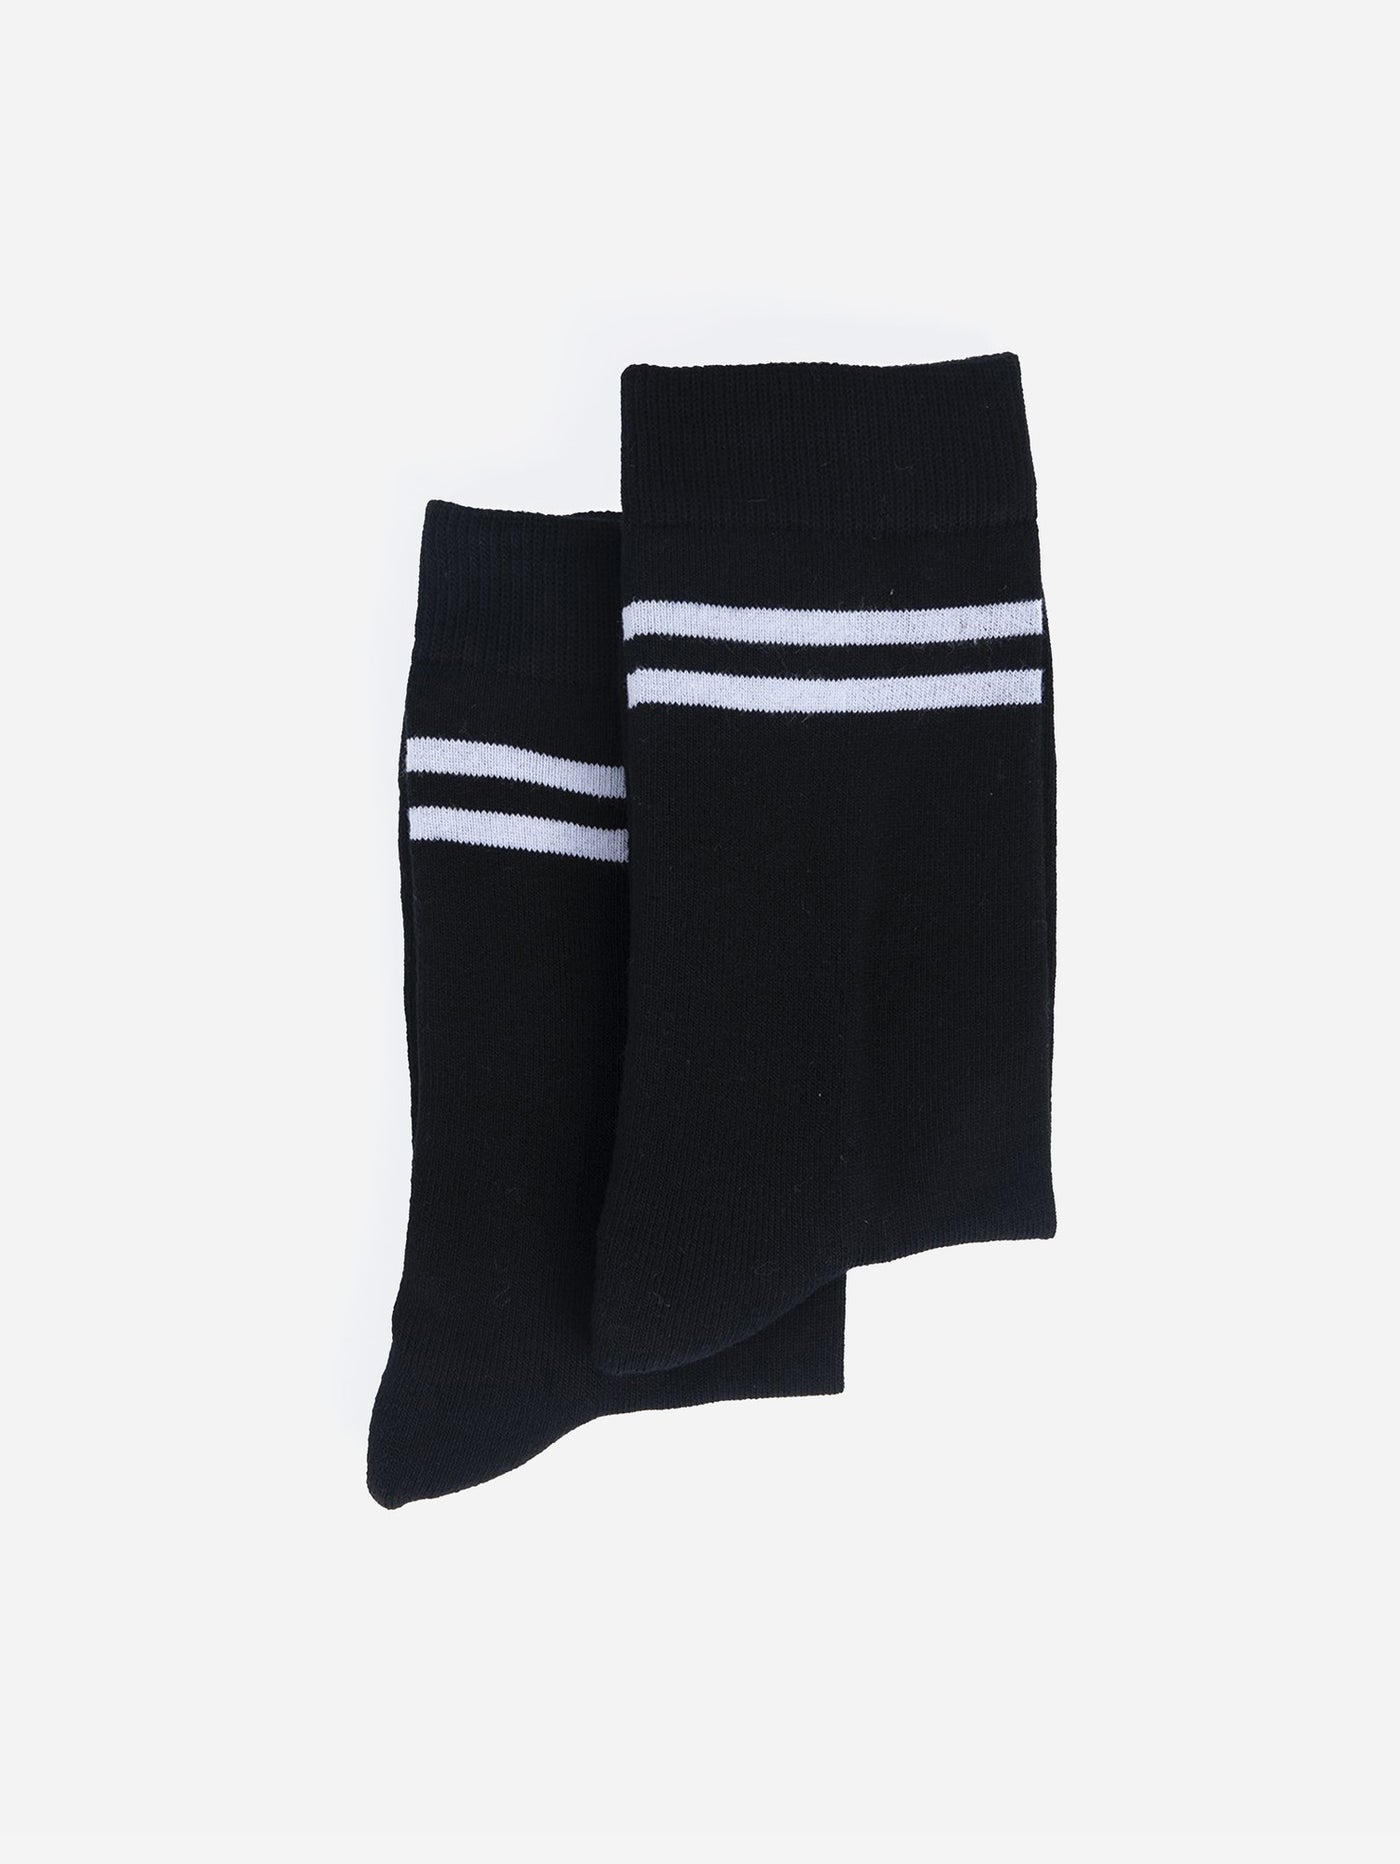 Socks - Mid-calf Striped